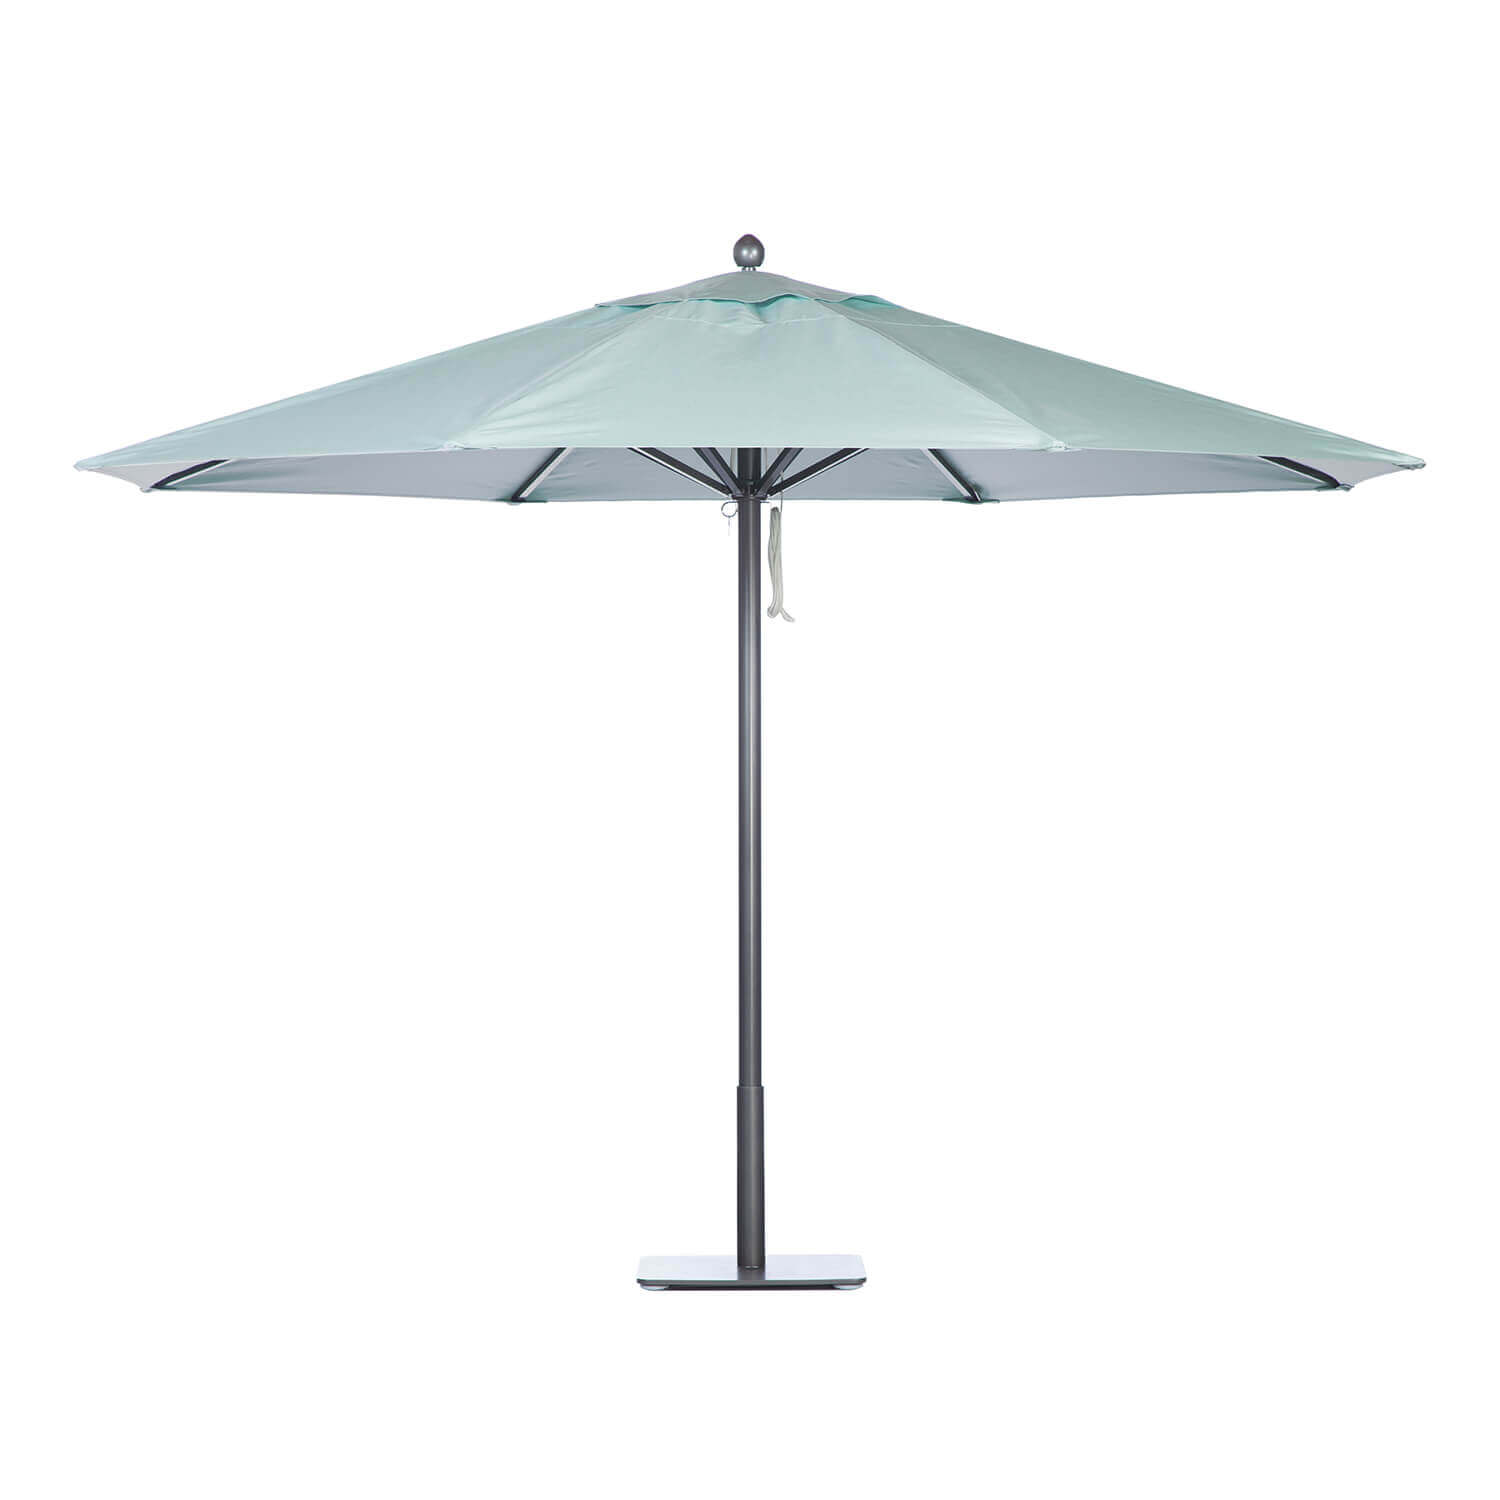 Sea Umbrella Image